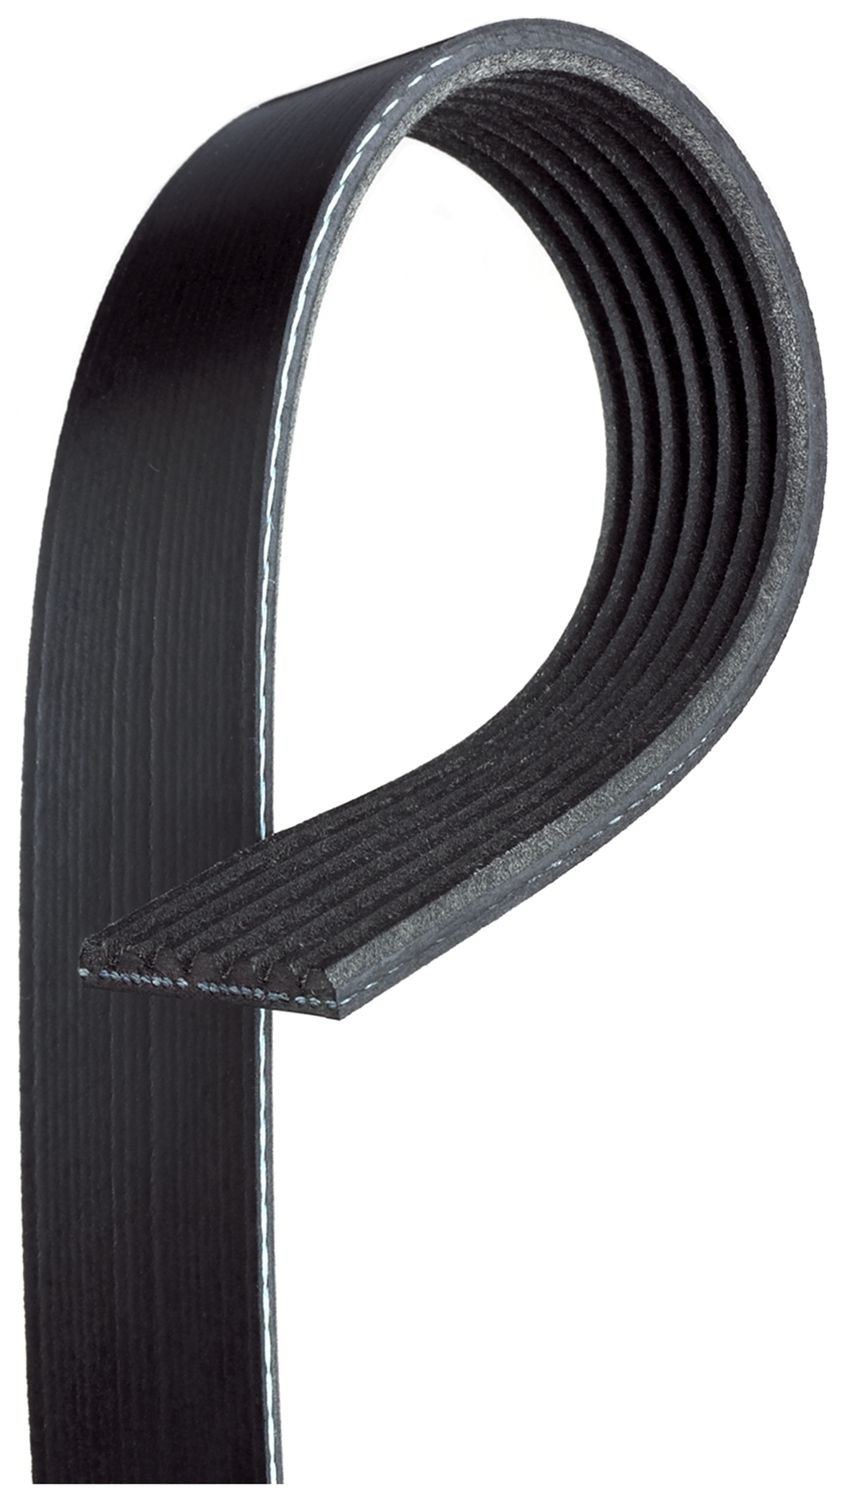 GATES K071222 Serpentine belt 3103mm, 7